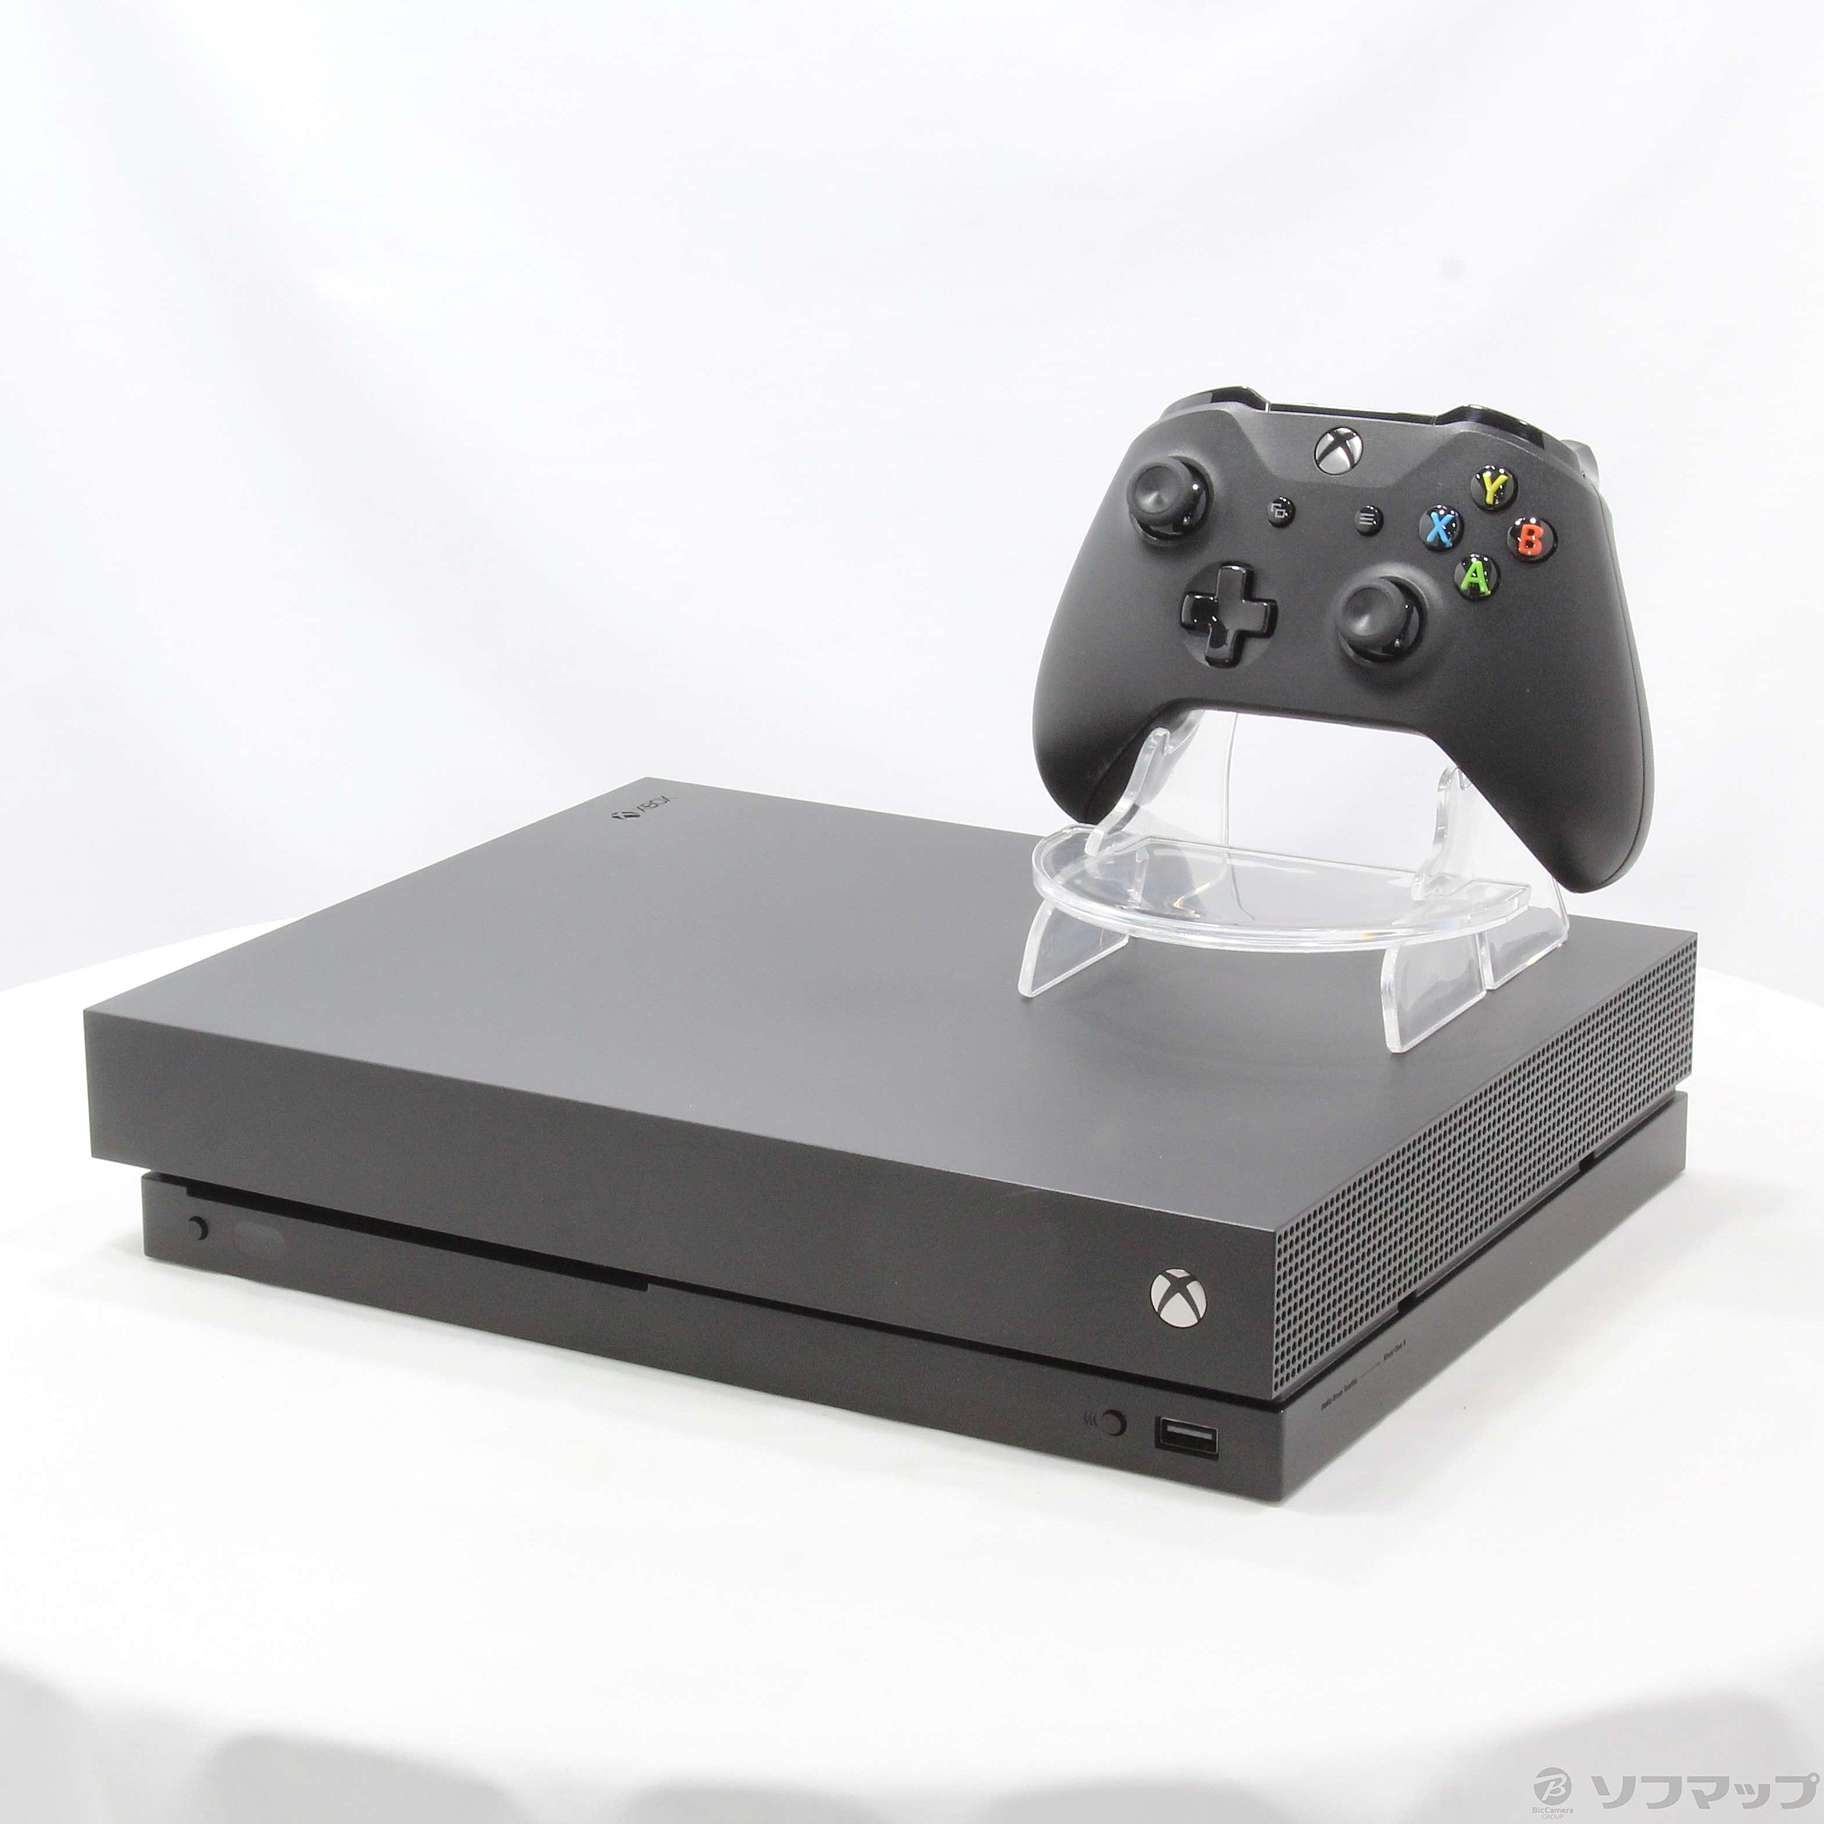 Xbox One S 1 TB シャドウ オブ ザ トゥームレイダー 同梱版